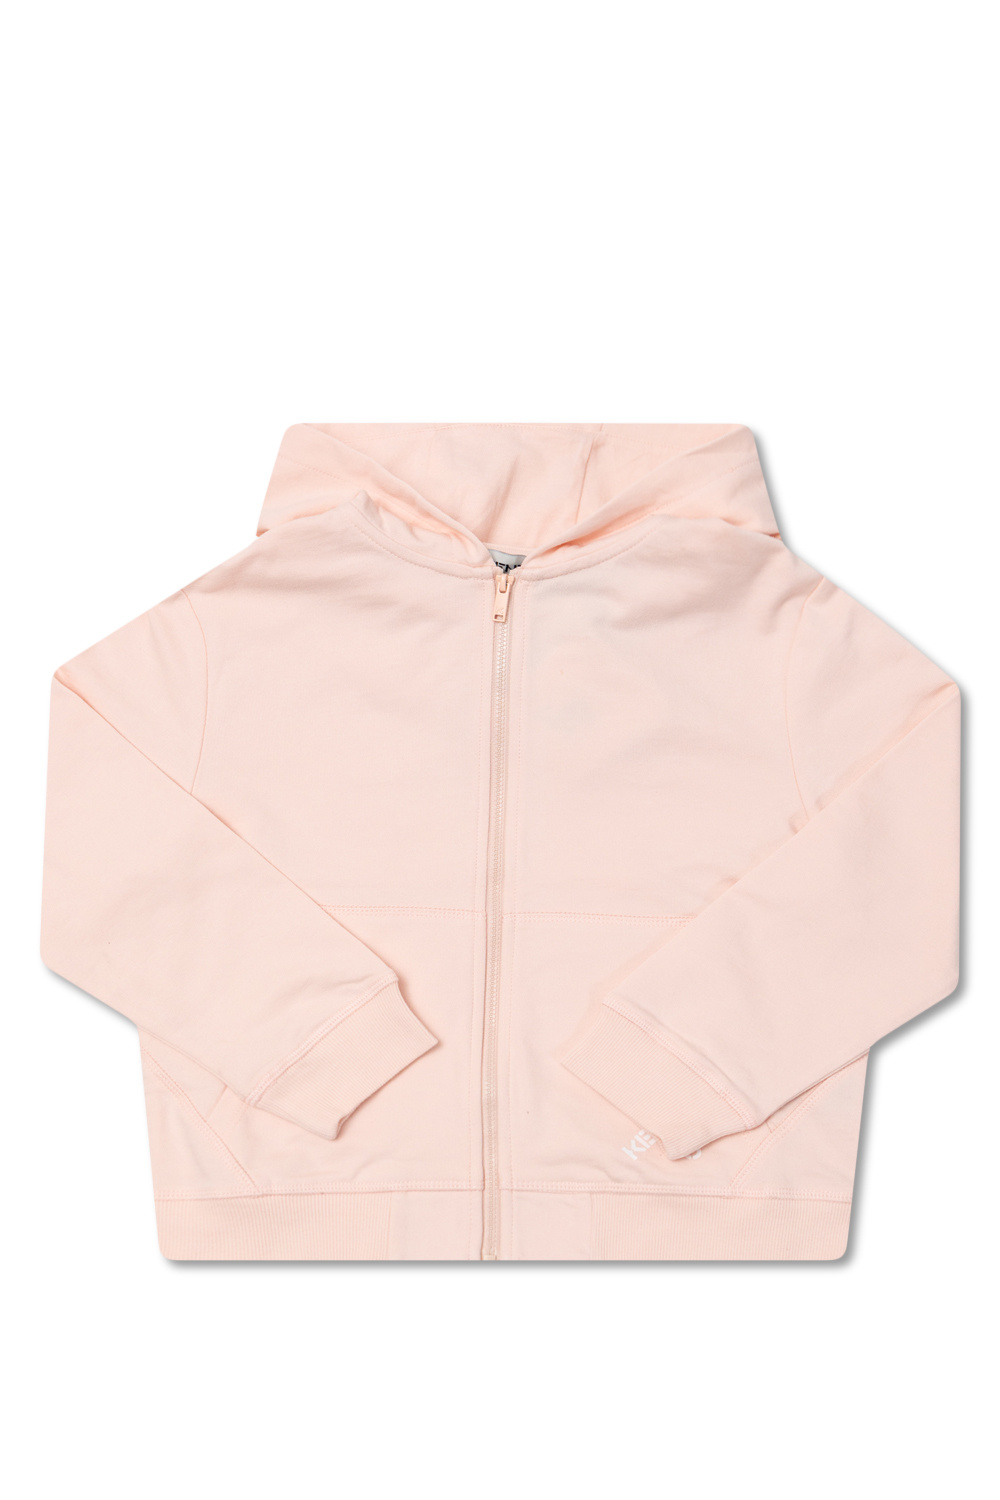 Kenzo Kids floral stripe camp-collar shirt Pink